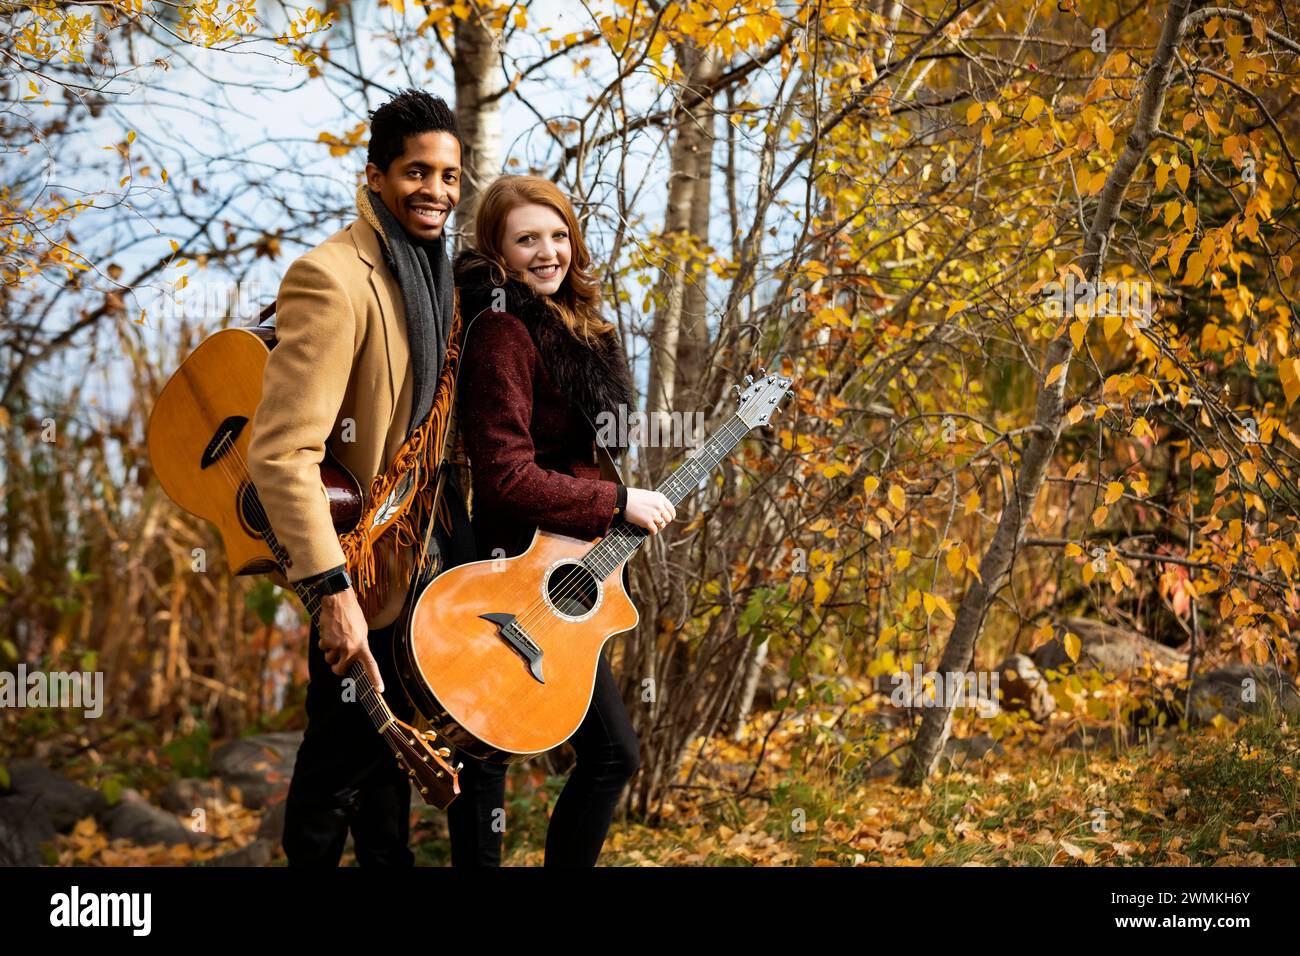 Ritratto di una coppia di coniugi che tiene in mano chitarre acustiche e sorride alla telecamera mentre trascorrono del tempo insieme durante un famil autunnale... Foto Stock